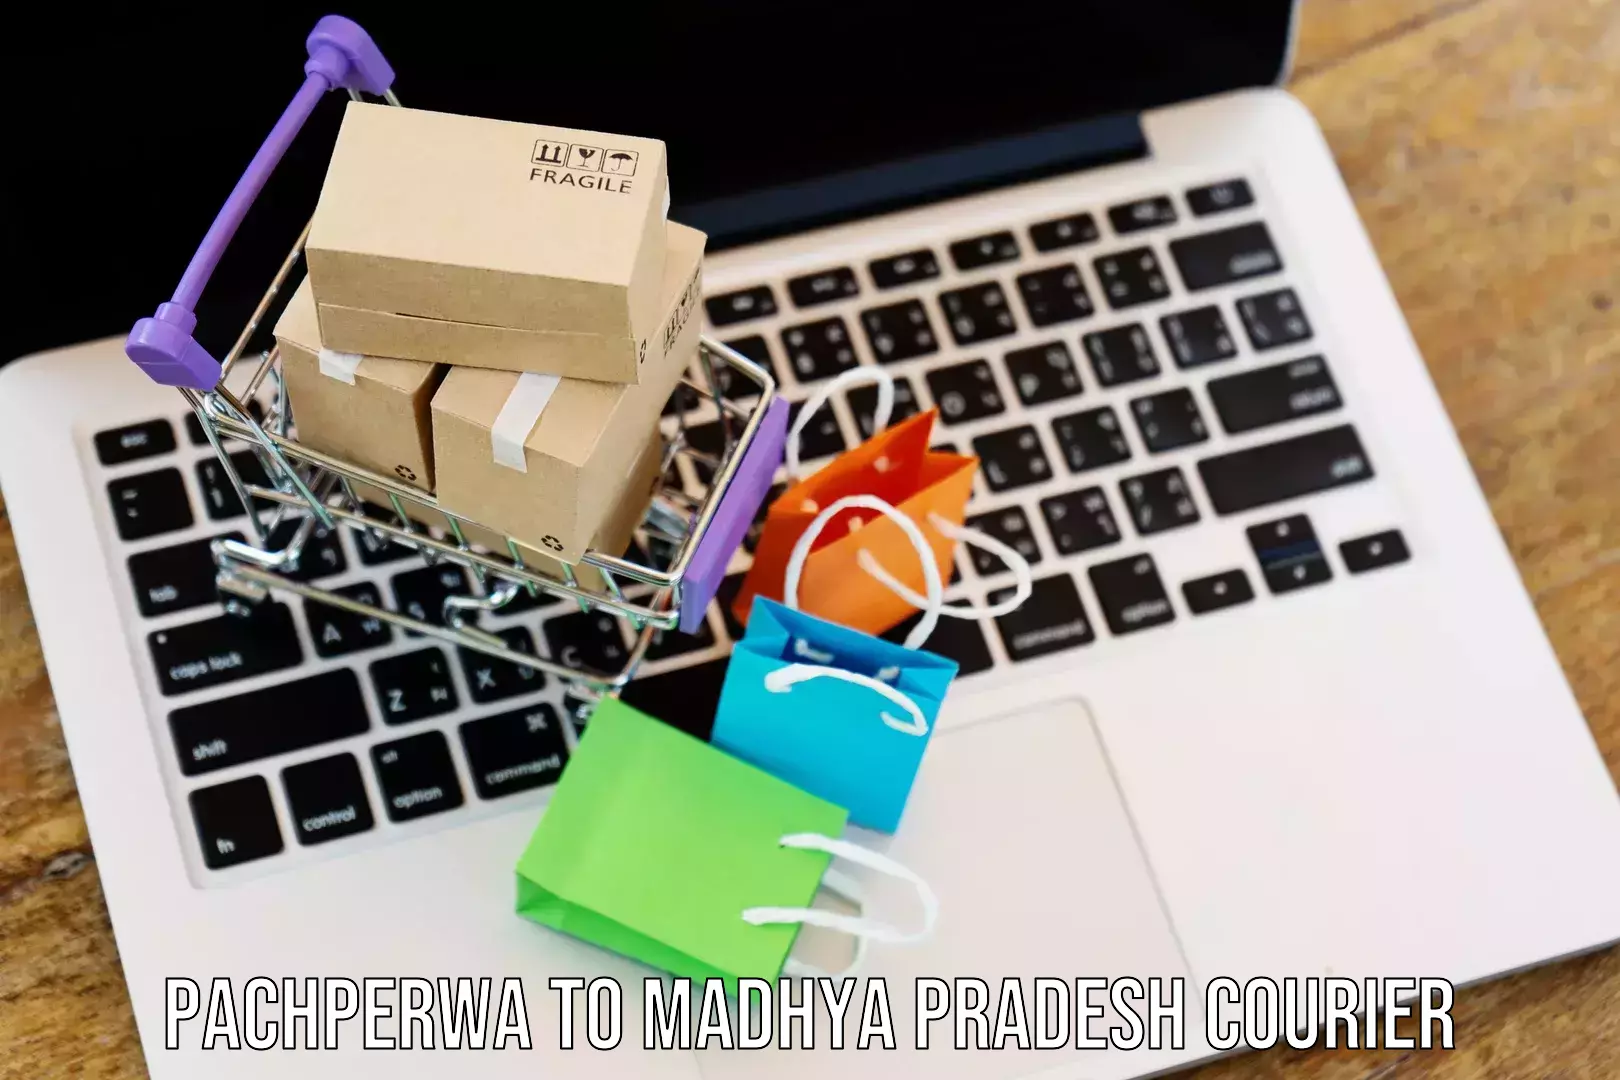 State-of-the-art courier technology Pachperwa to Madhya Pradesh